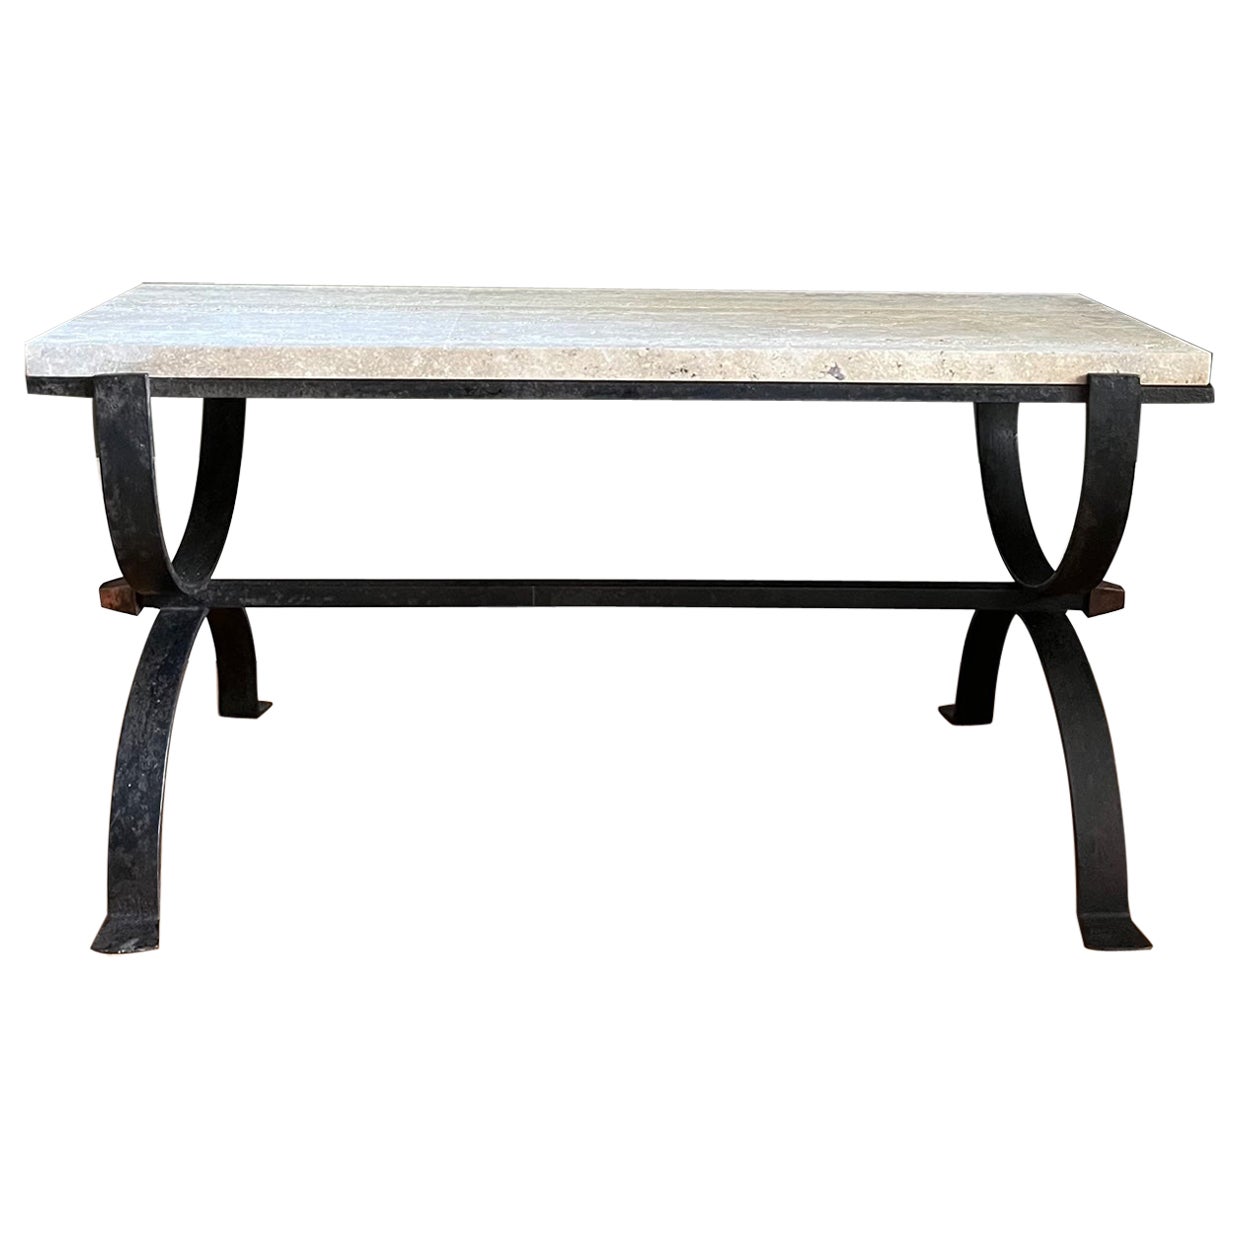 Petite table basse en fer forgé et travertin. Français vers 1950